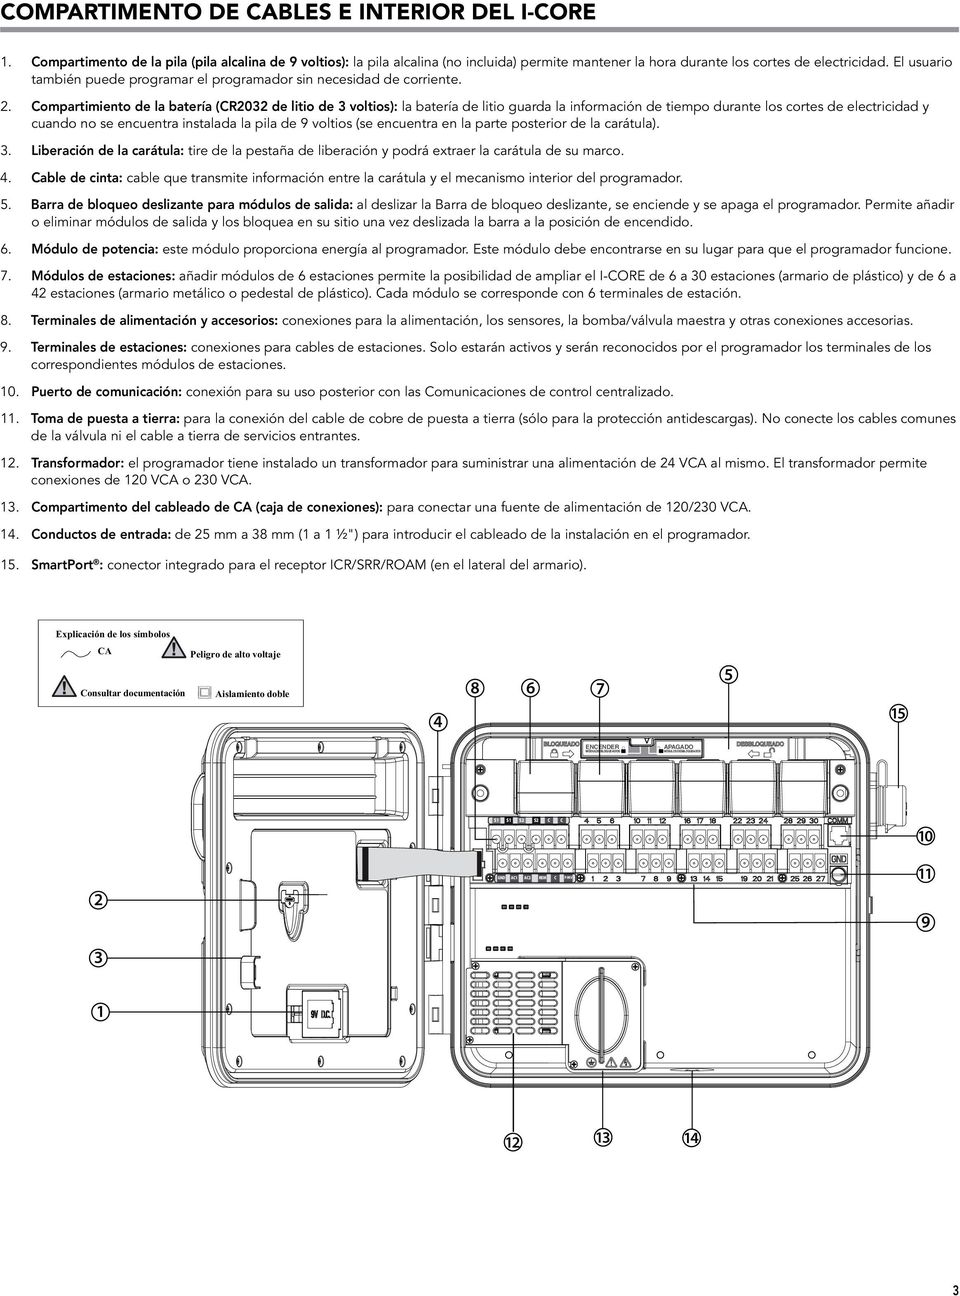 Compartimiento de la batería (CR2032 de litio de 3 voltios): la batería de litio guarda la información de tiempo durante los cortes de electricidad y cuando no se encuentra instalada la pila de 9